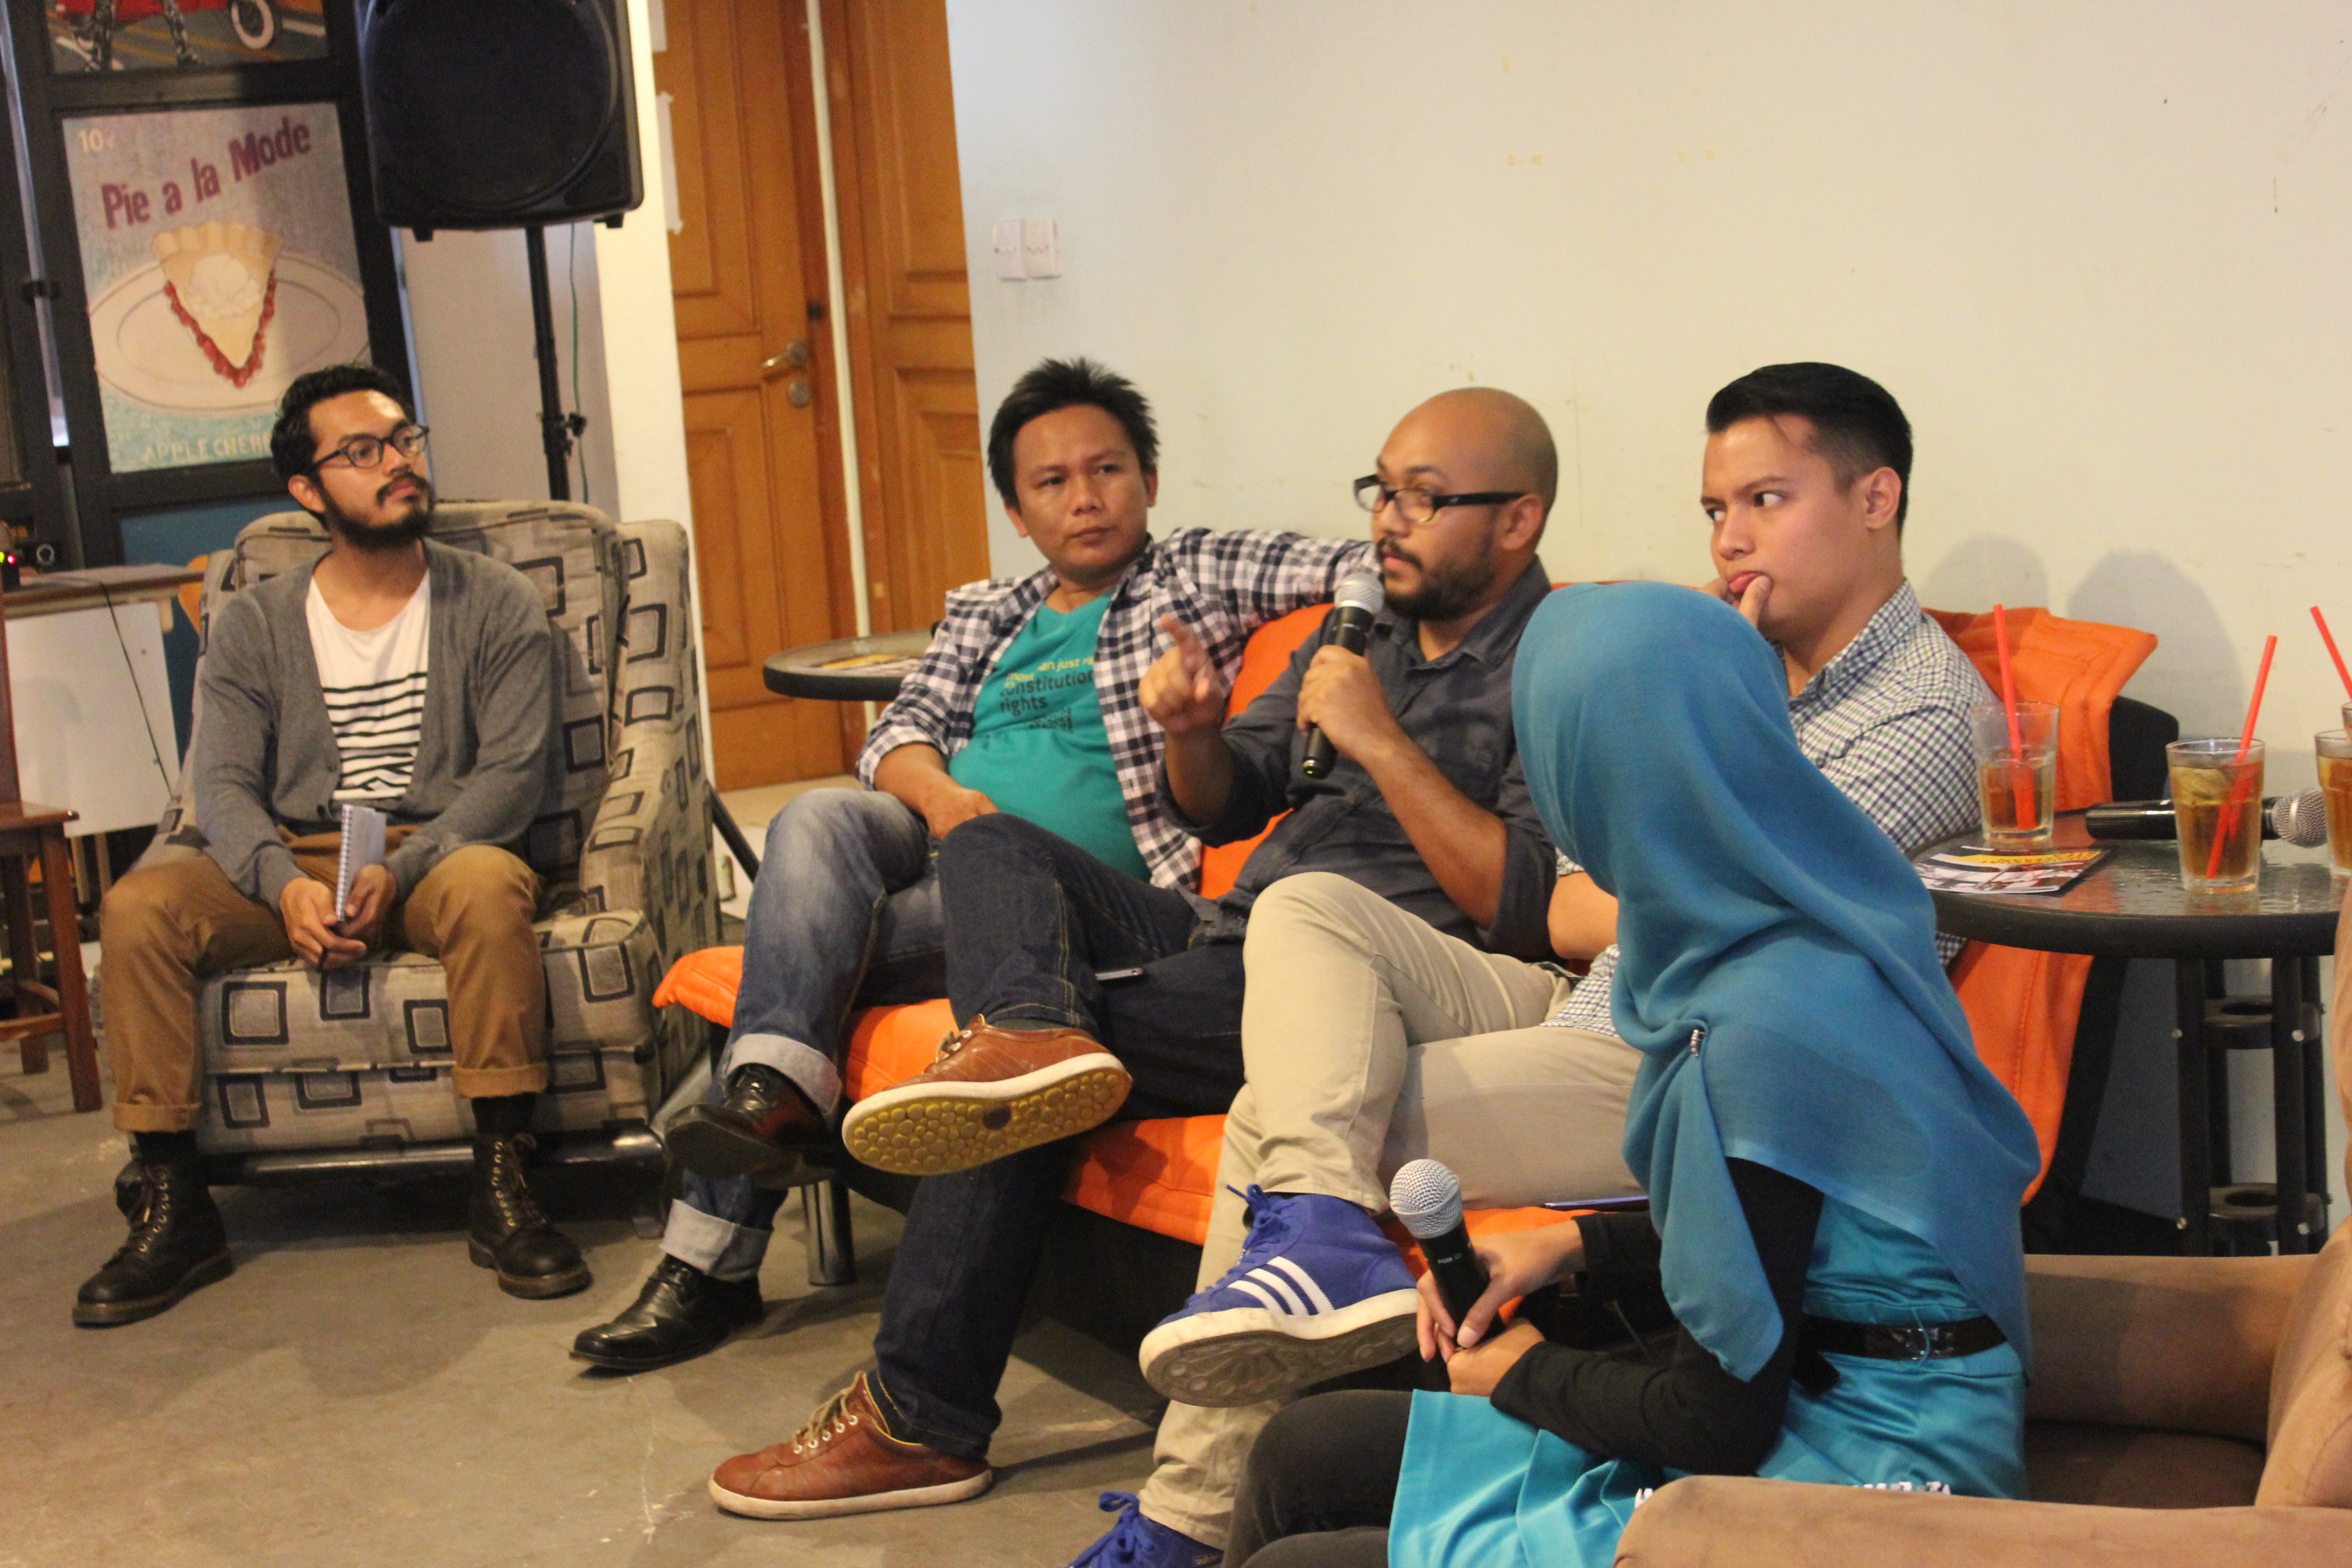 Acara diskusi â€œMemperkuat Kejaksaan Kitaâ€ di Jakarta, Sabtu (20/9). Foto: MaPPI FHUI